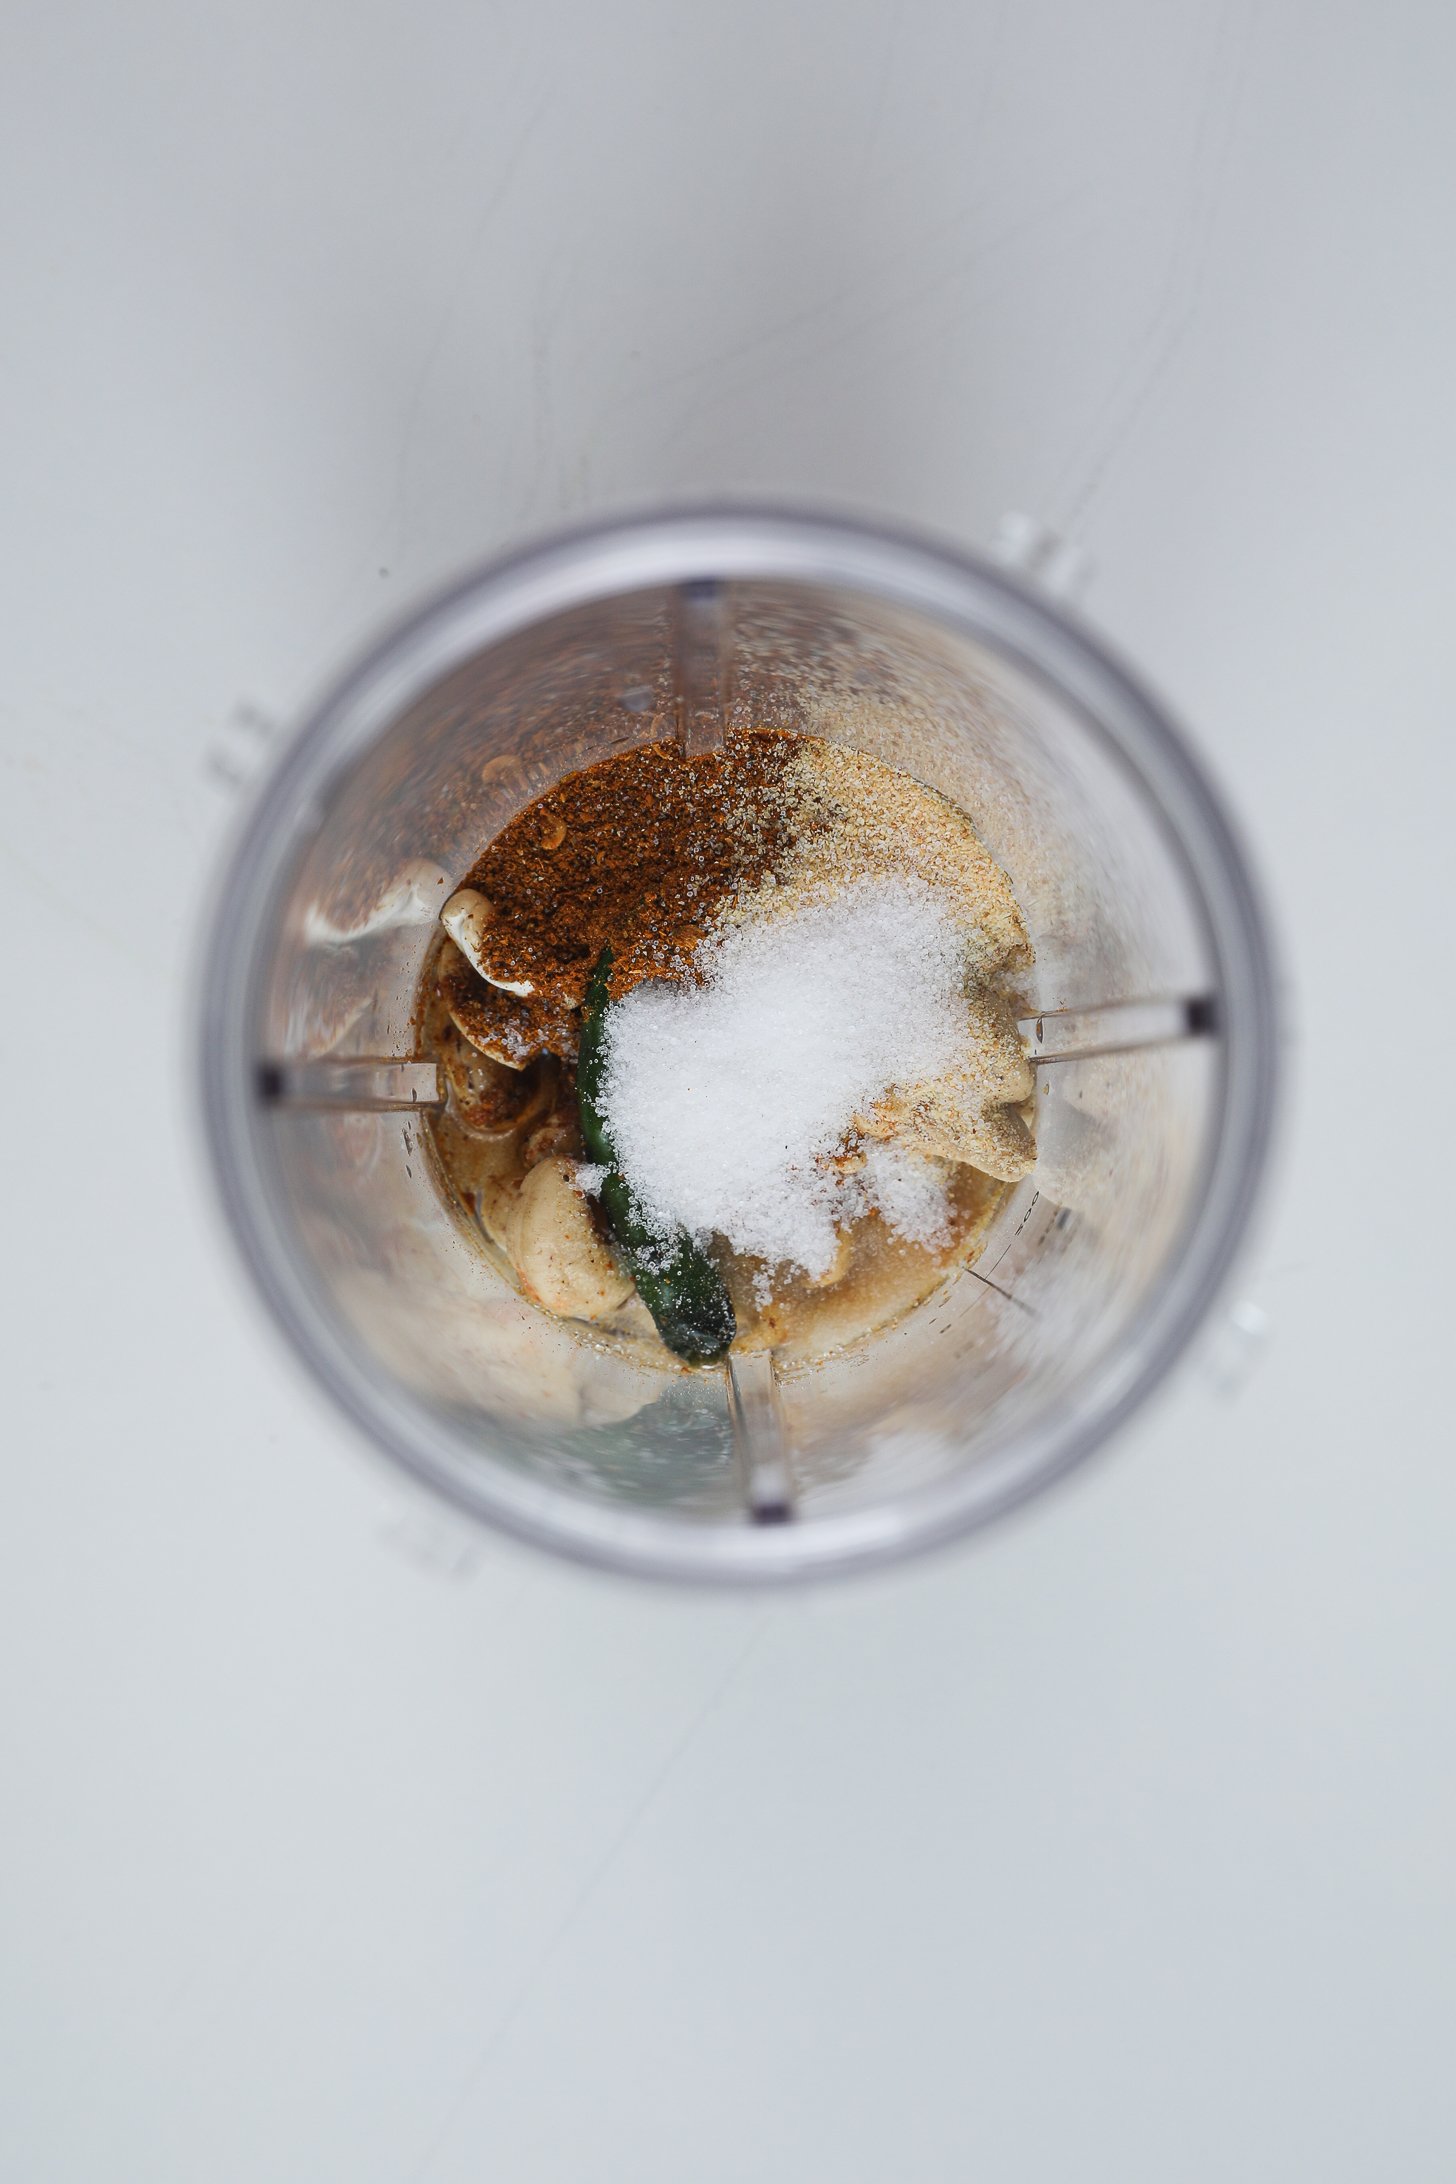 یک فنجان مخلوط کن فشرده حاوی نمک، بادام هندی، ادویه جات ترشی جات و فلفل سبز.